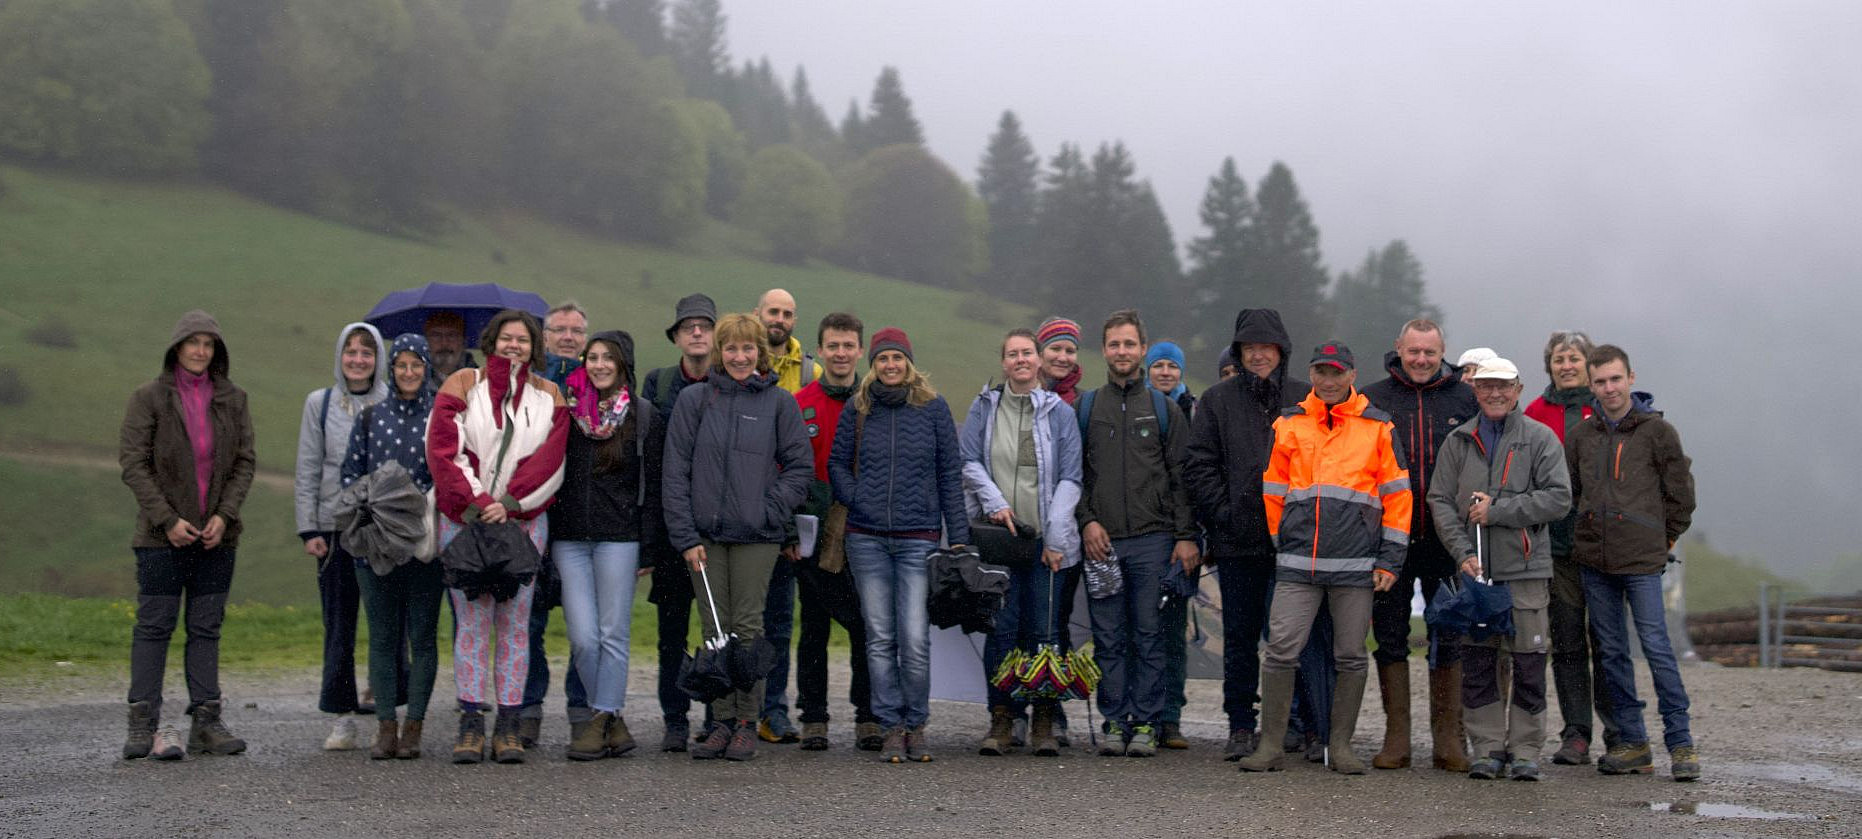 Die Projektgruppe an einem regnerischen Tag in einem französischen Wald. ©Forest EcoValue